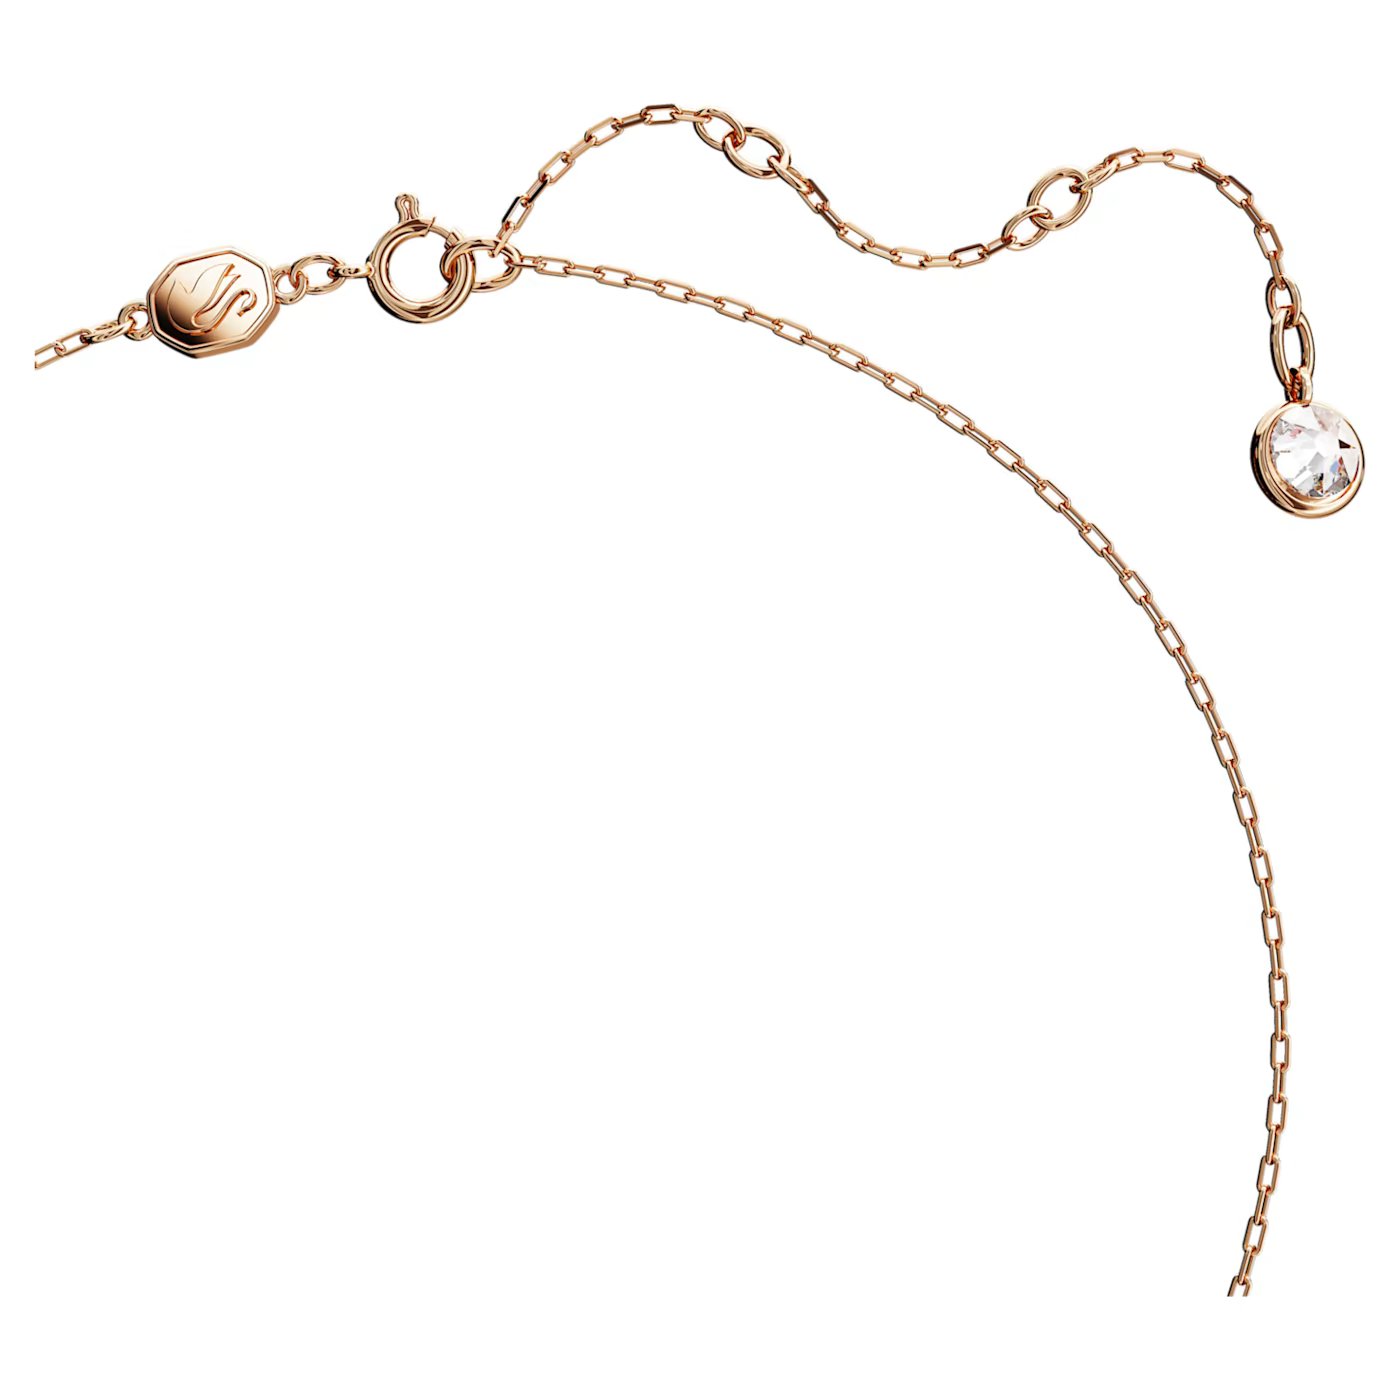 Bybest Shop - Swarovski Iconic Swan drop earrings